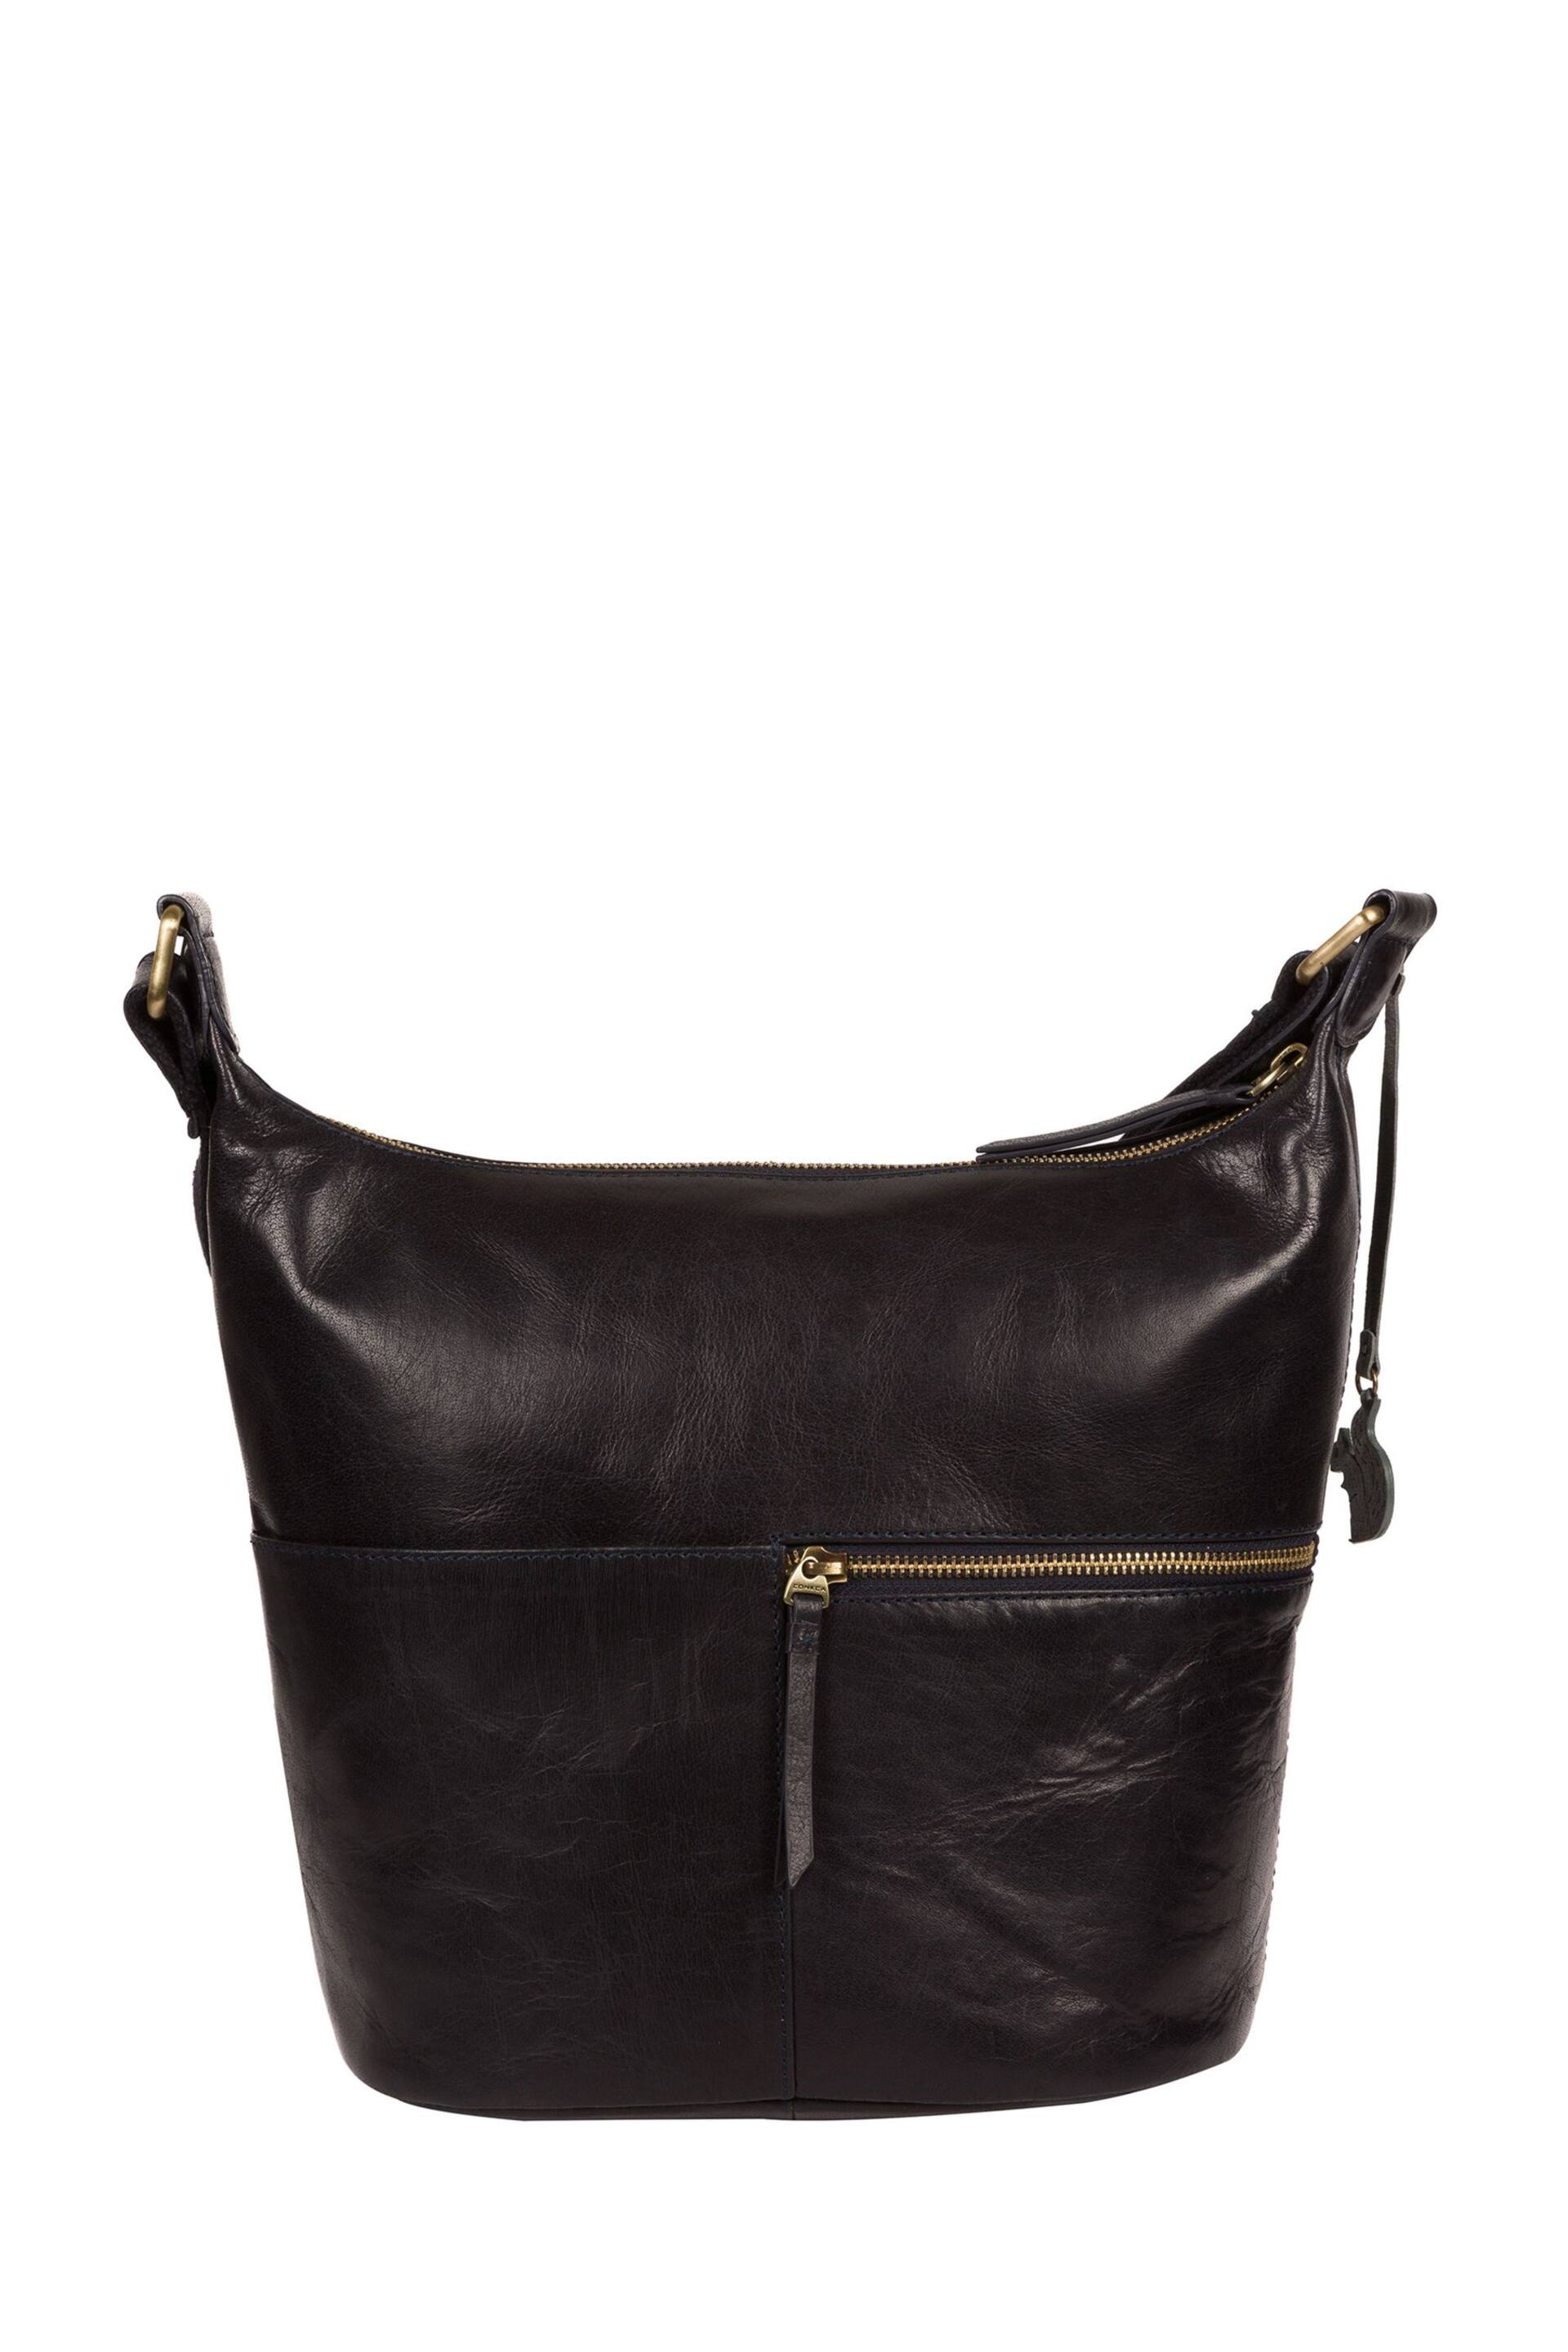 Conkca Kristin Leather Shoulder Bag - Image 4 of 6